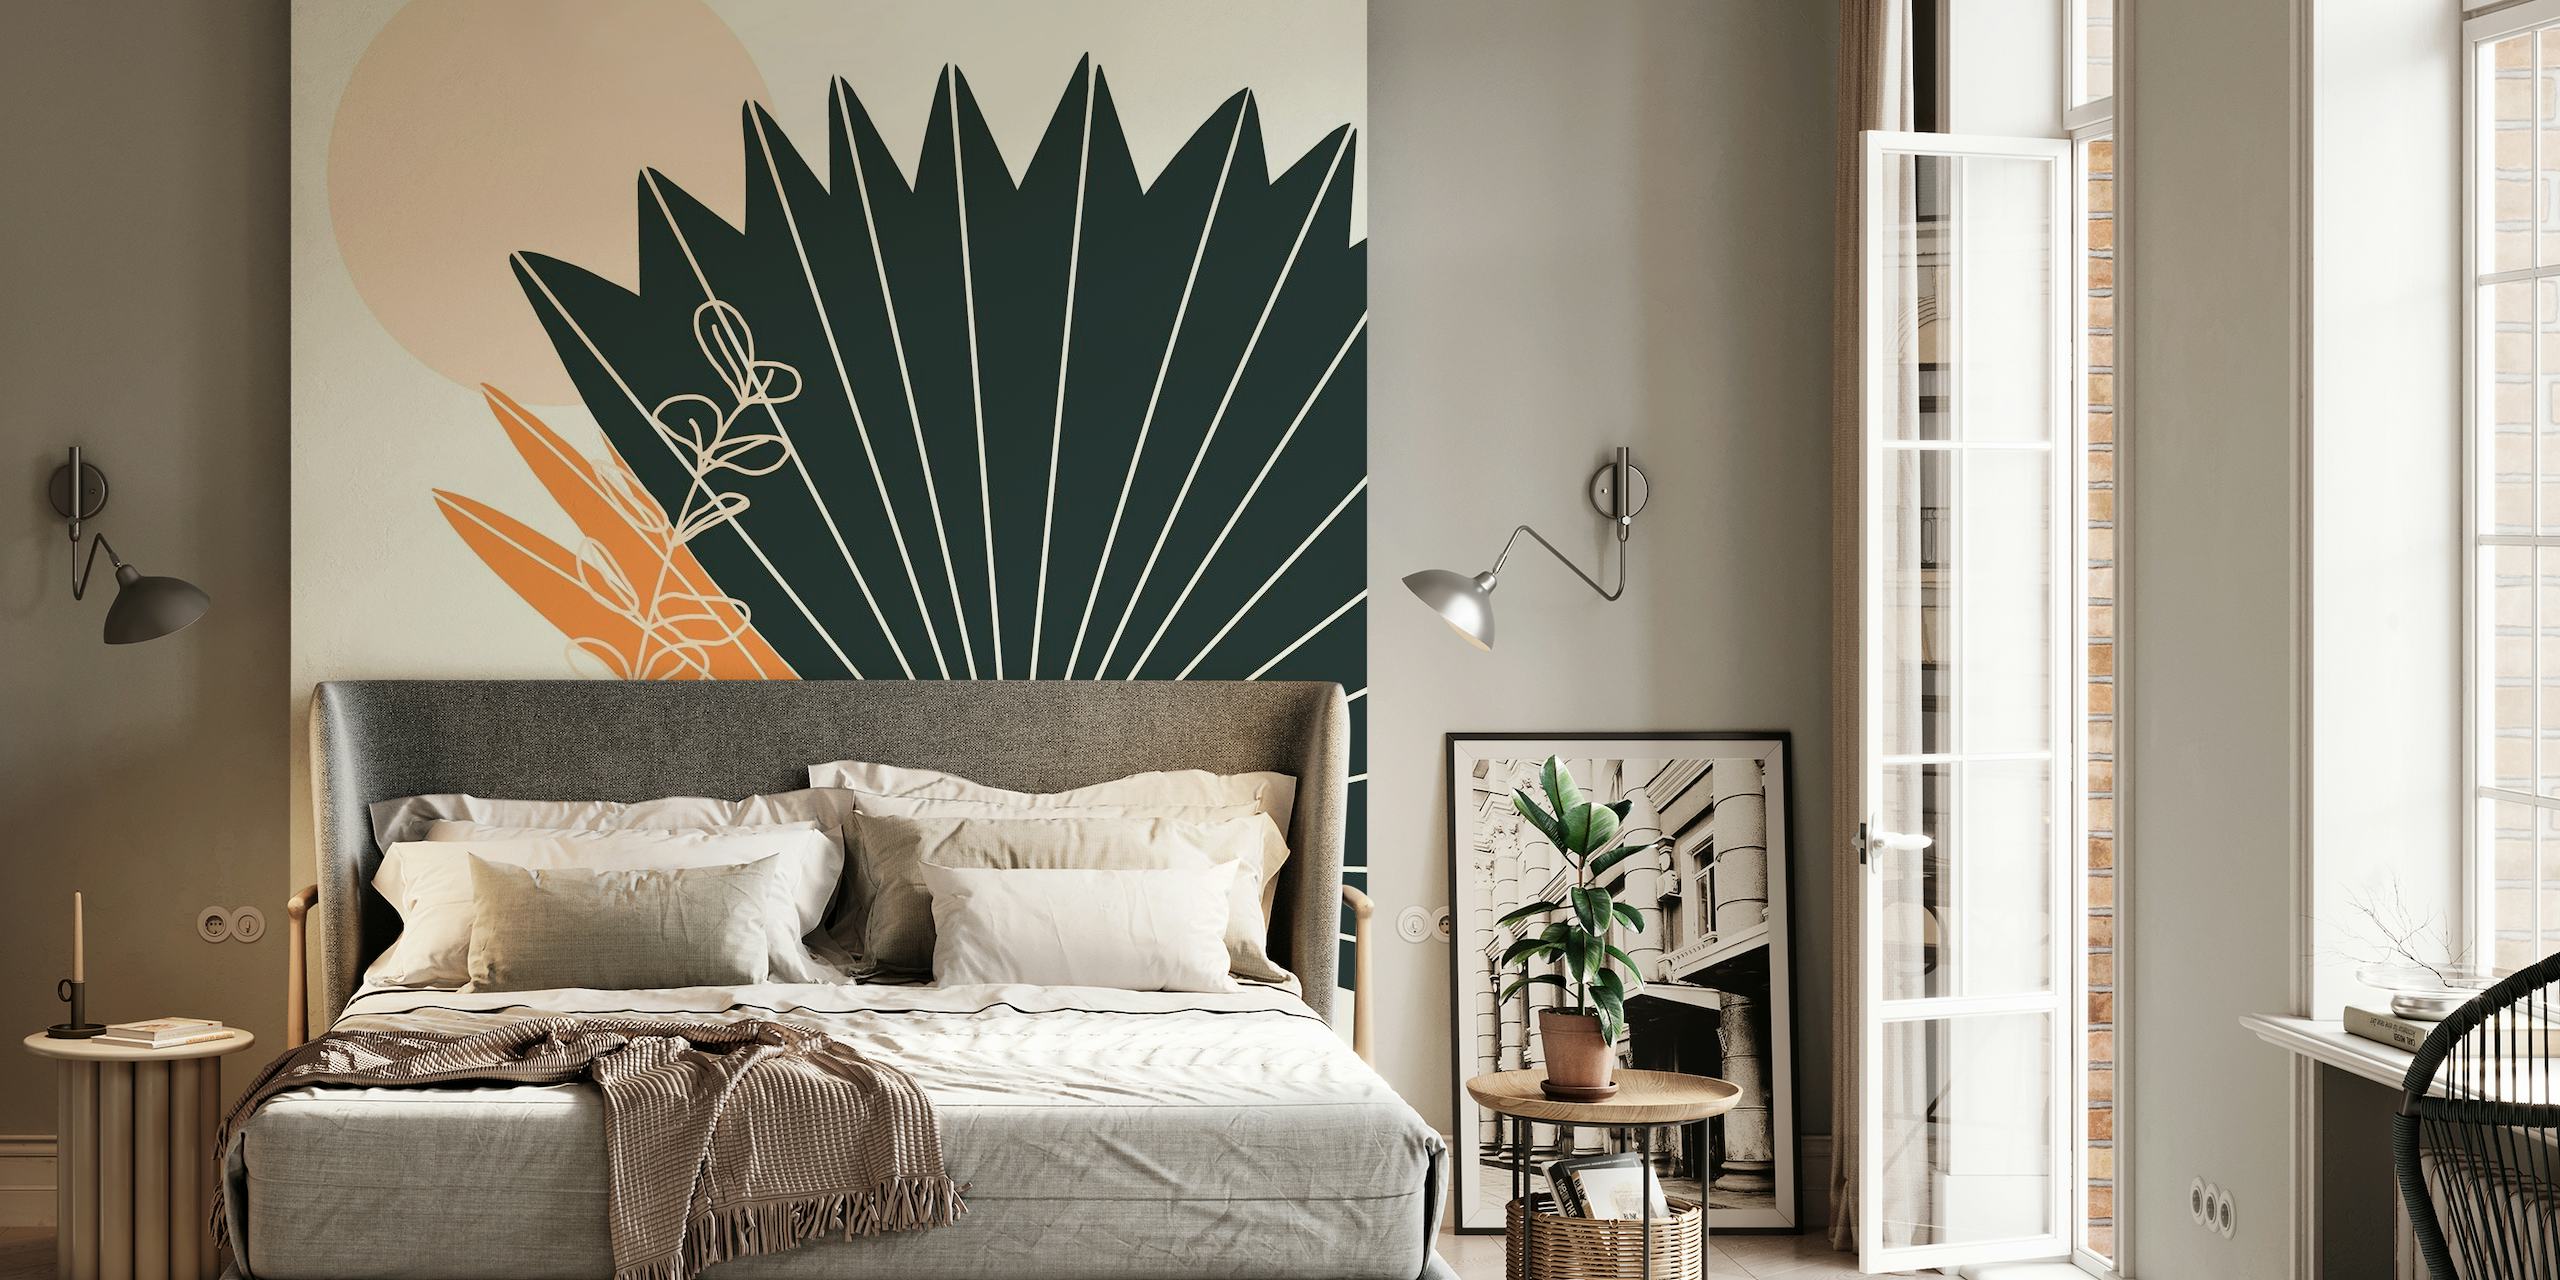 Abstraktní fototapeta se stylizovanými palmovými listy a řemeslnou vázou v zemitých tónech